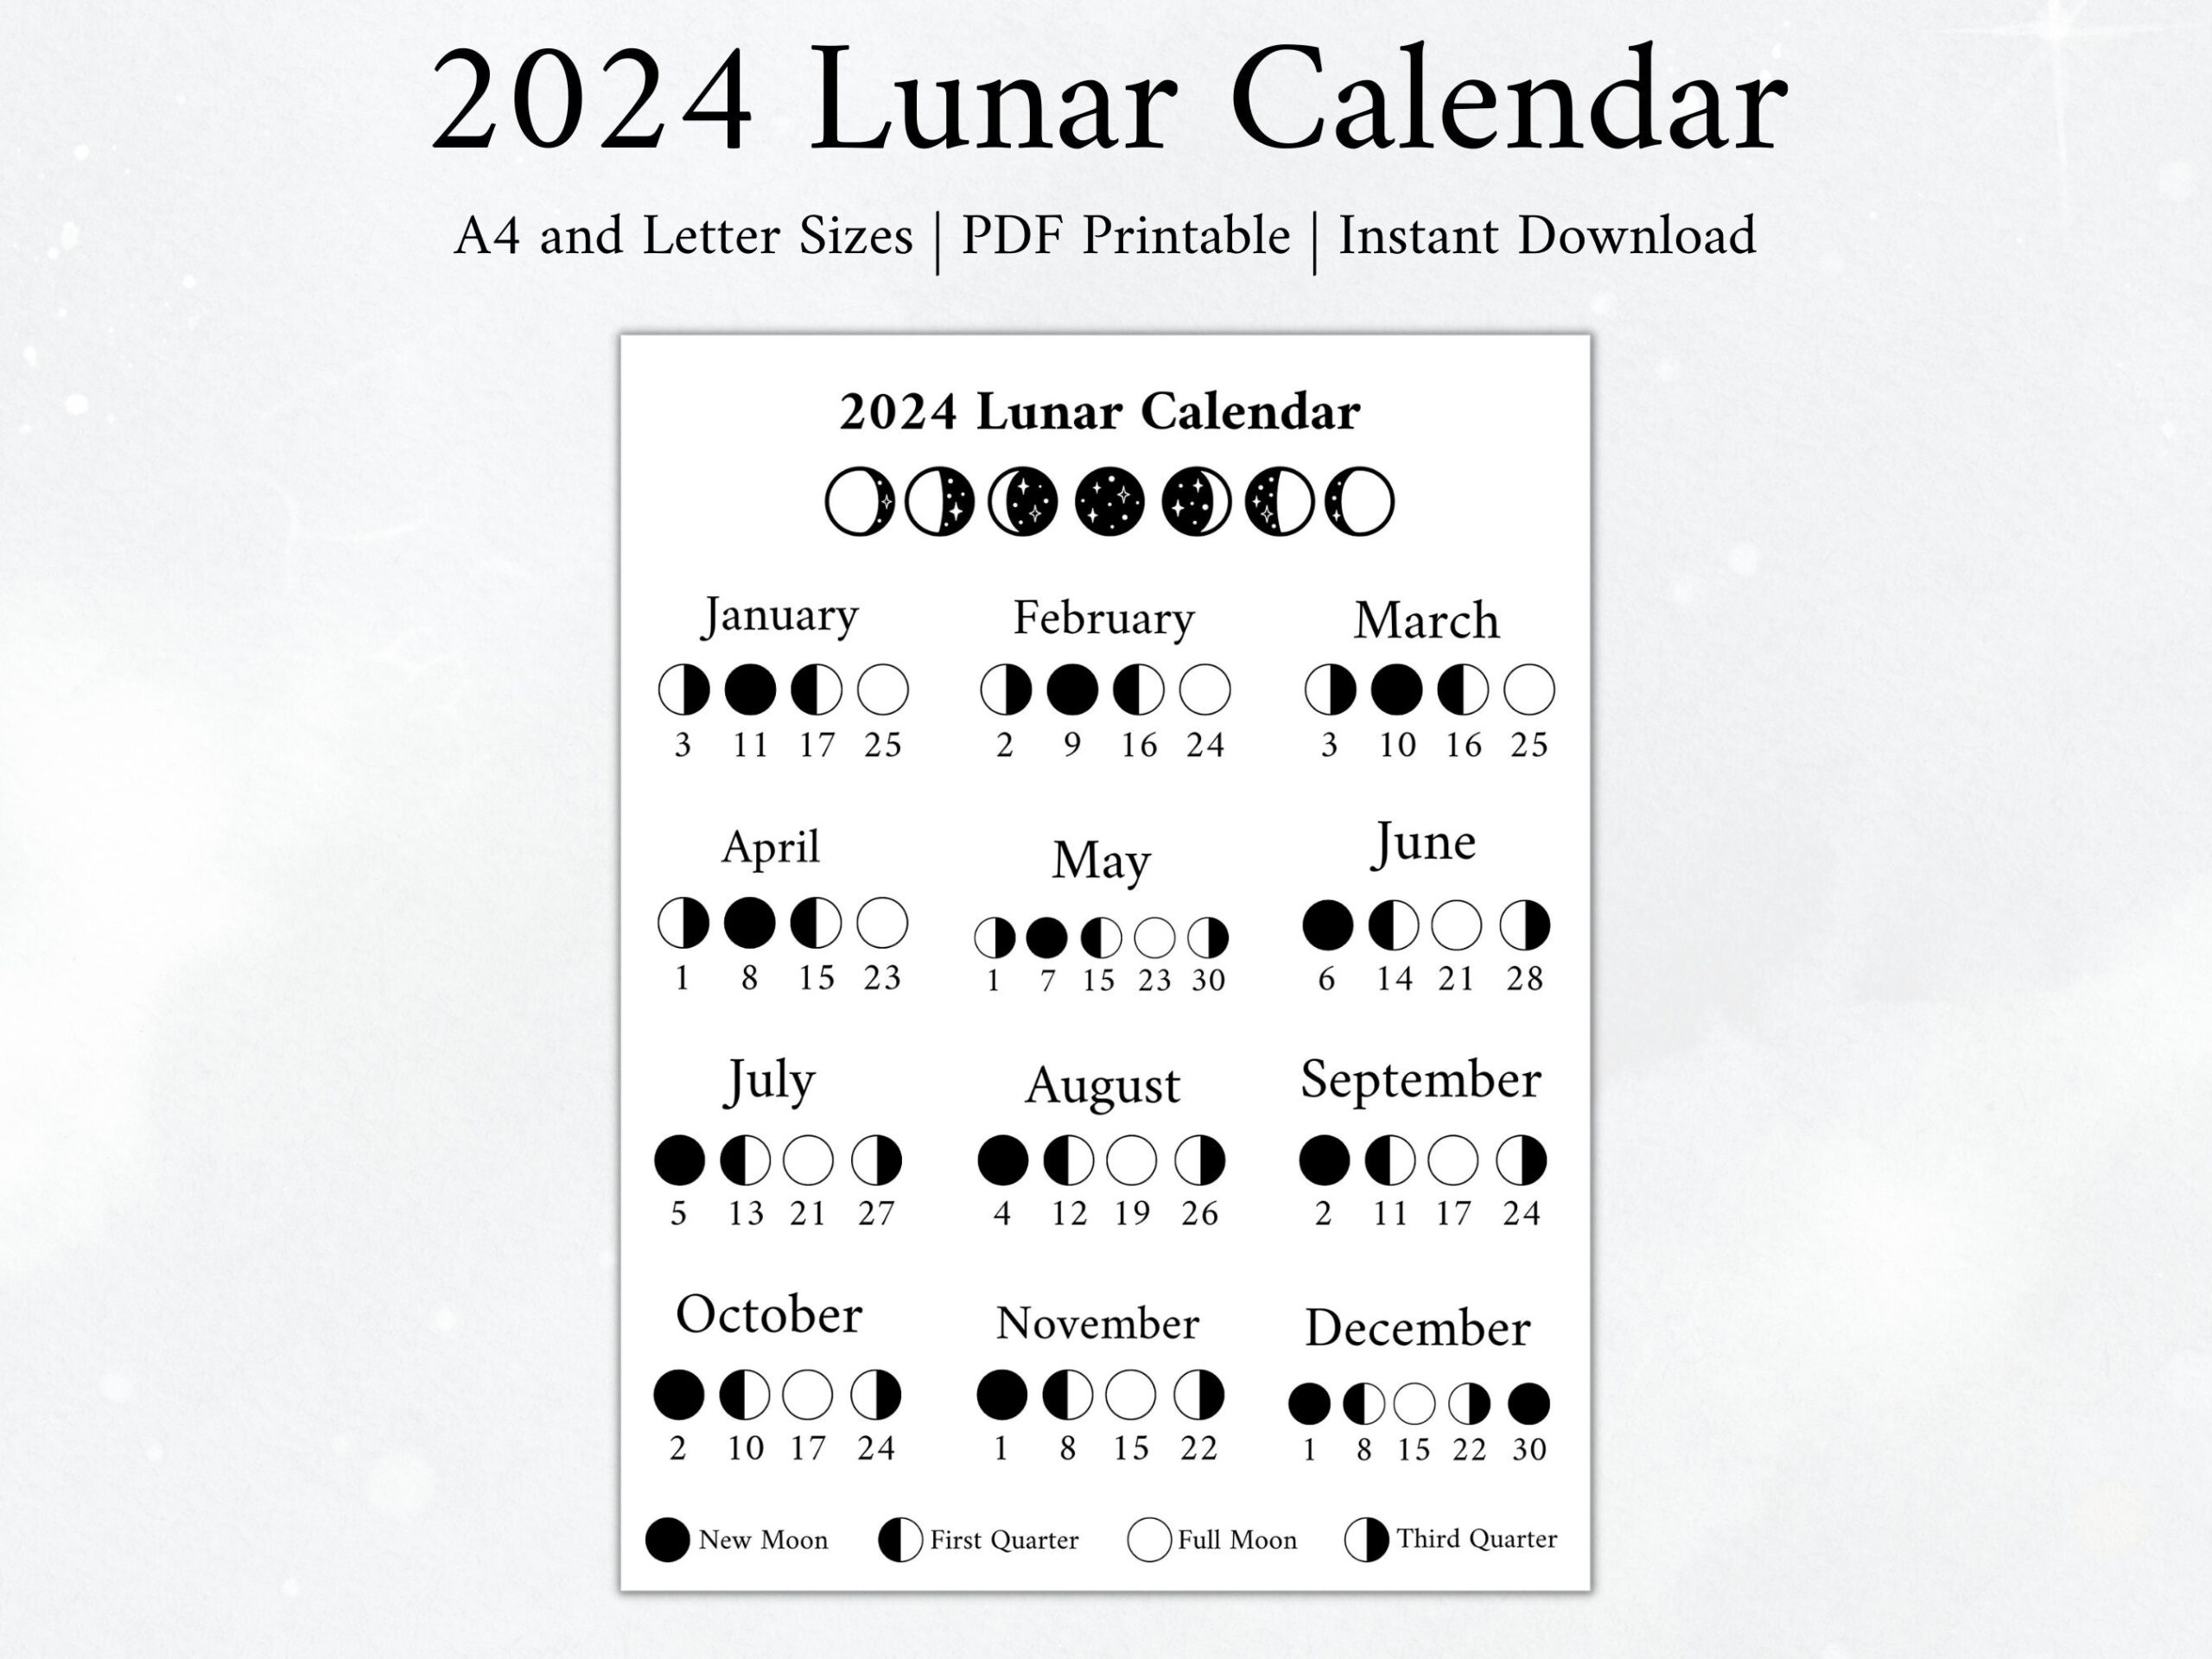 2024 Moon Calendar Moon Phase Calendar Lunar Calendar 2024 - Etsy for Printable 2024 Calendar With Moon Phases